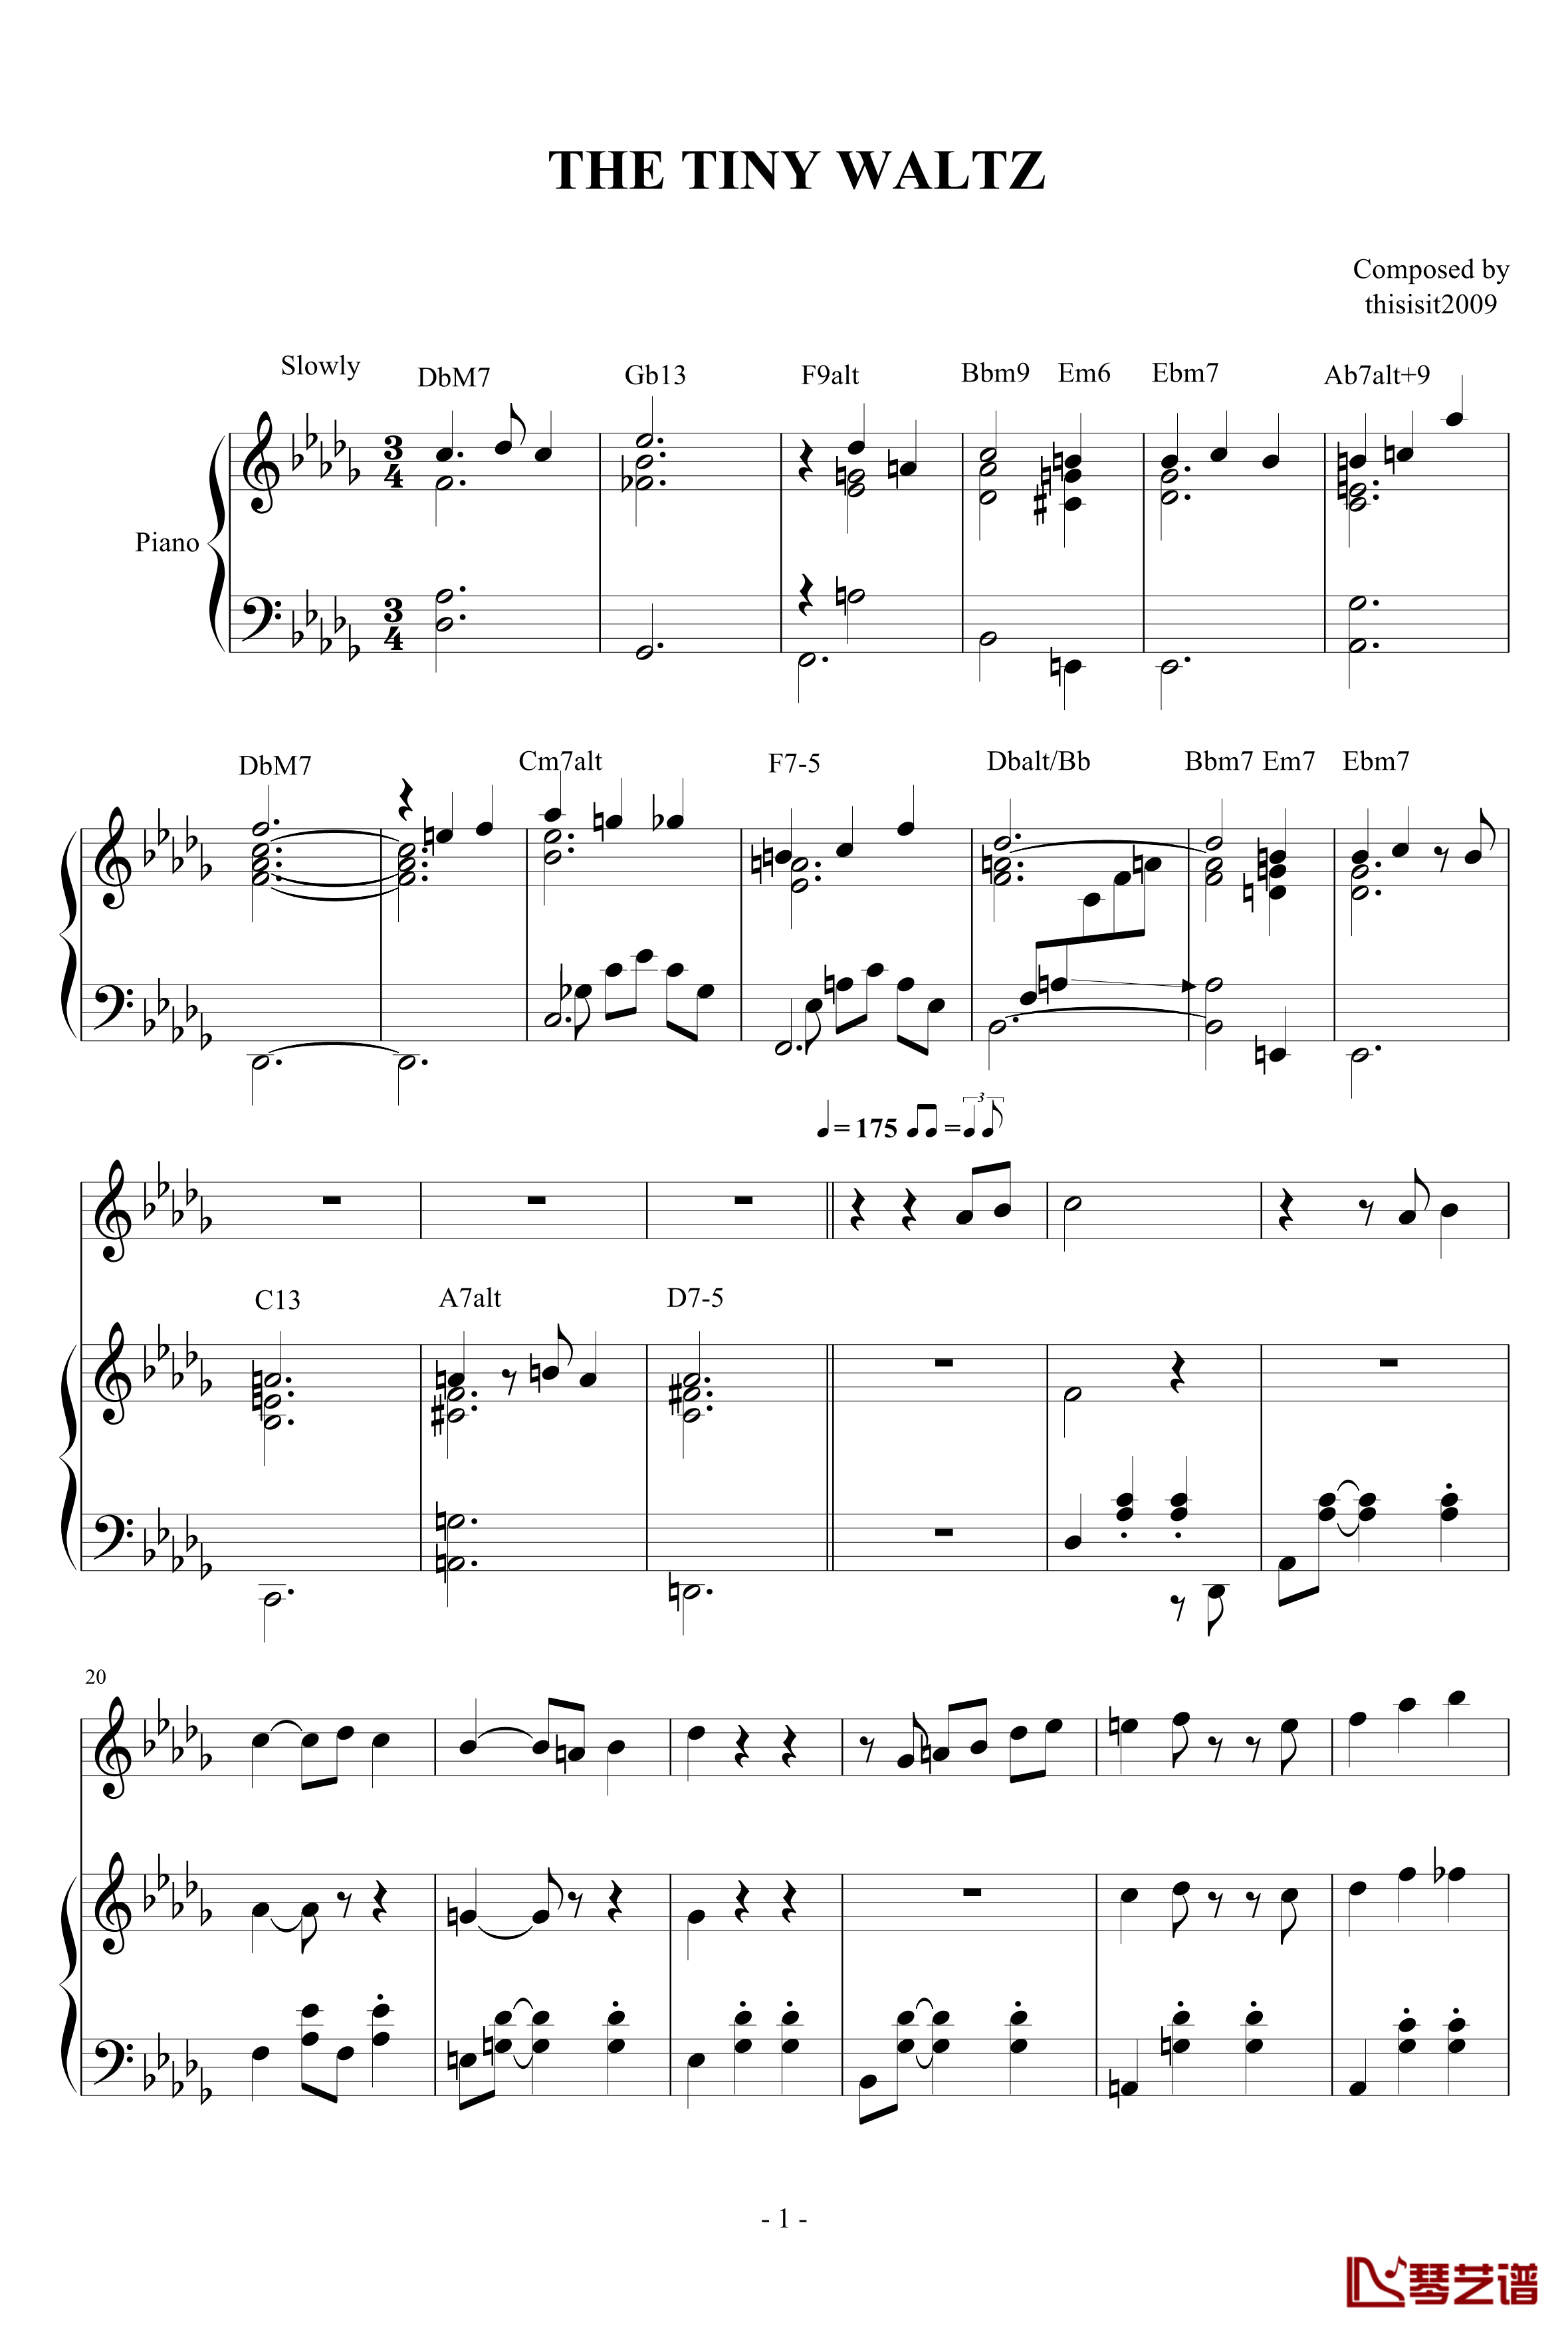 小华尔兹钢琴谱-演奏版-thisisit20091